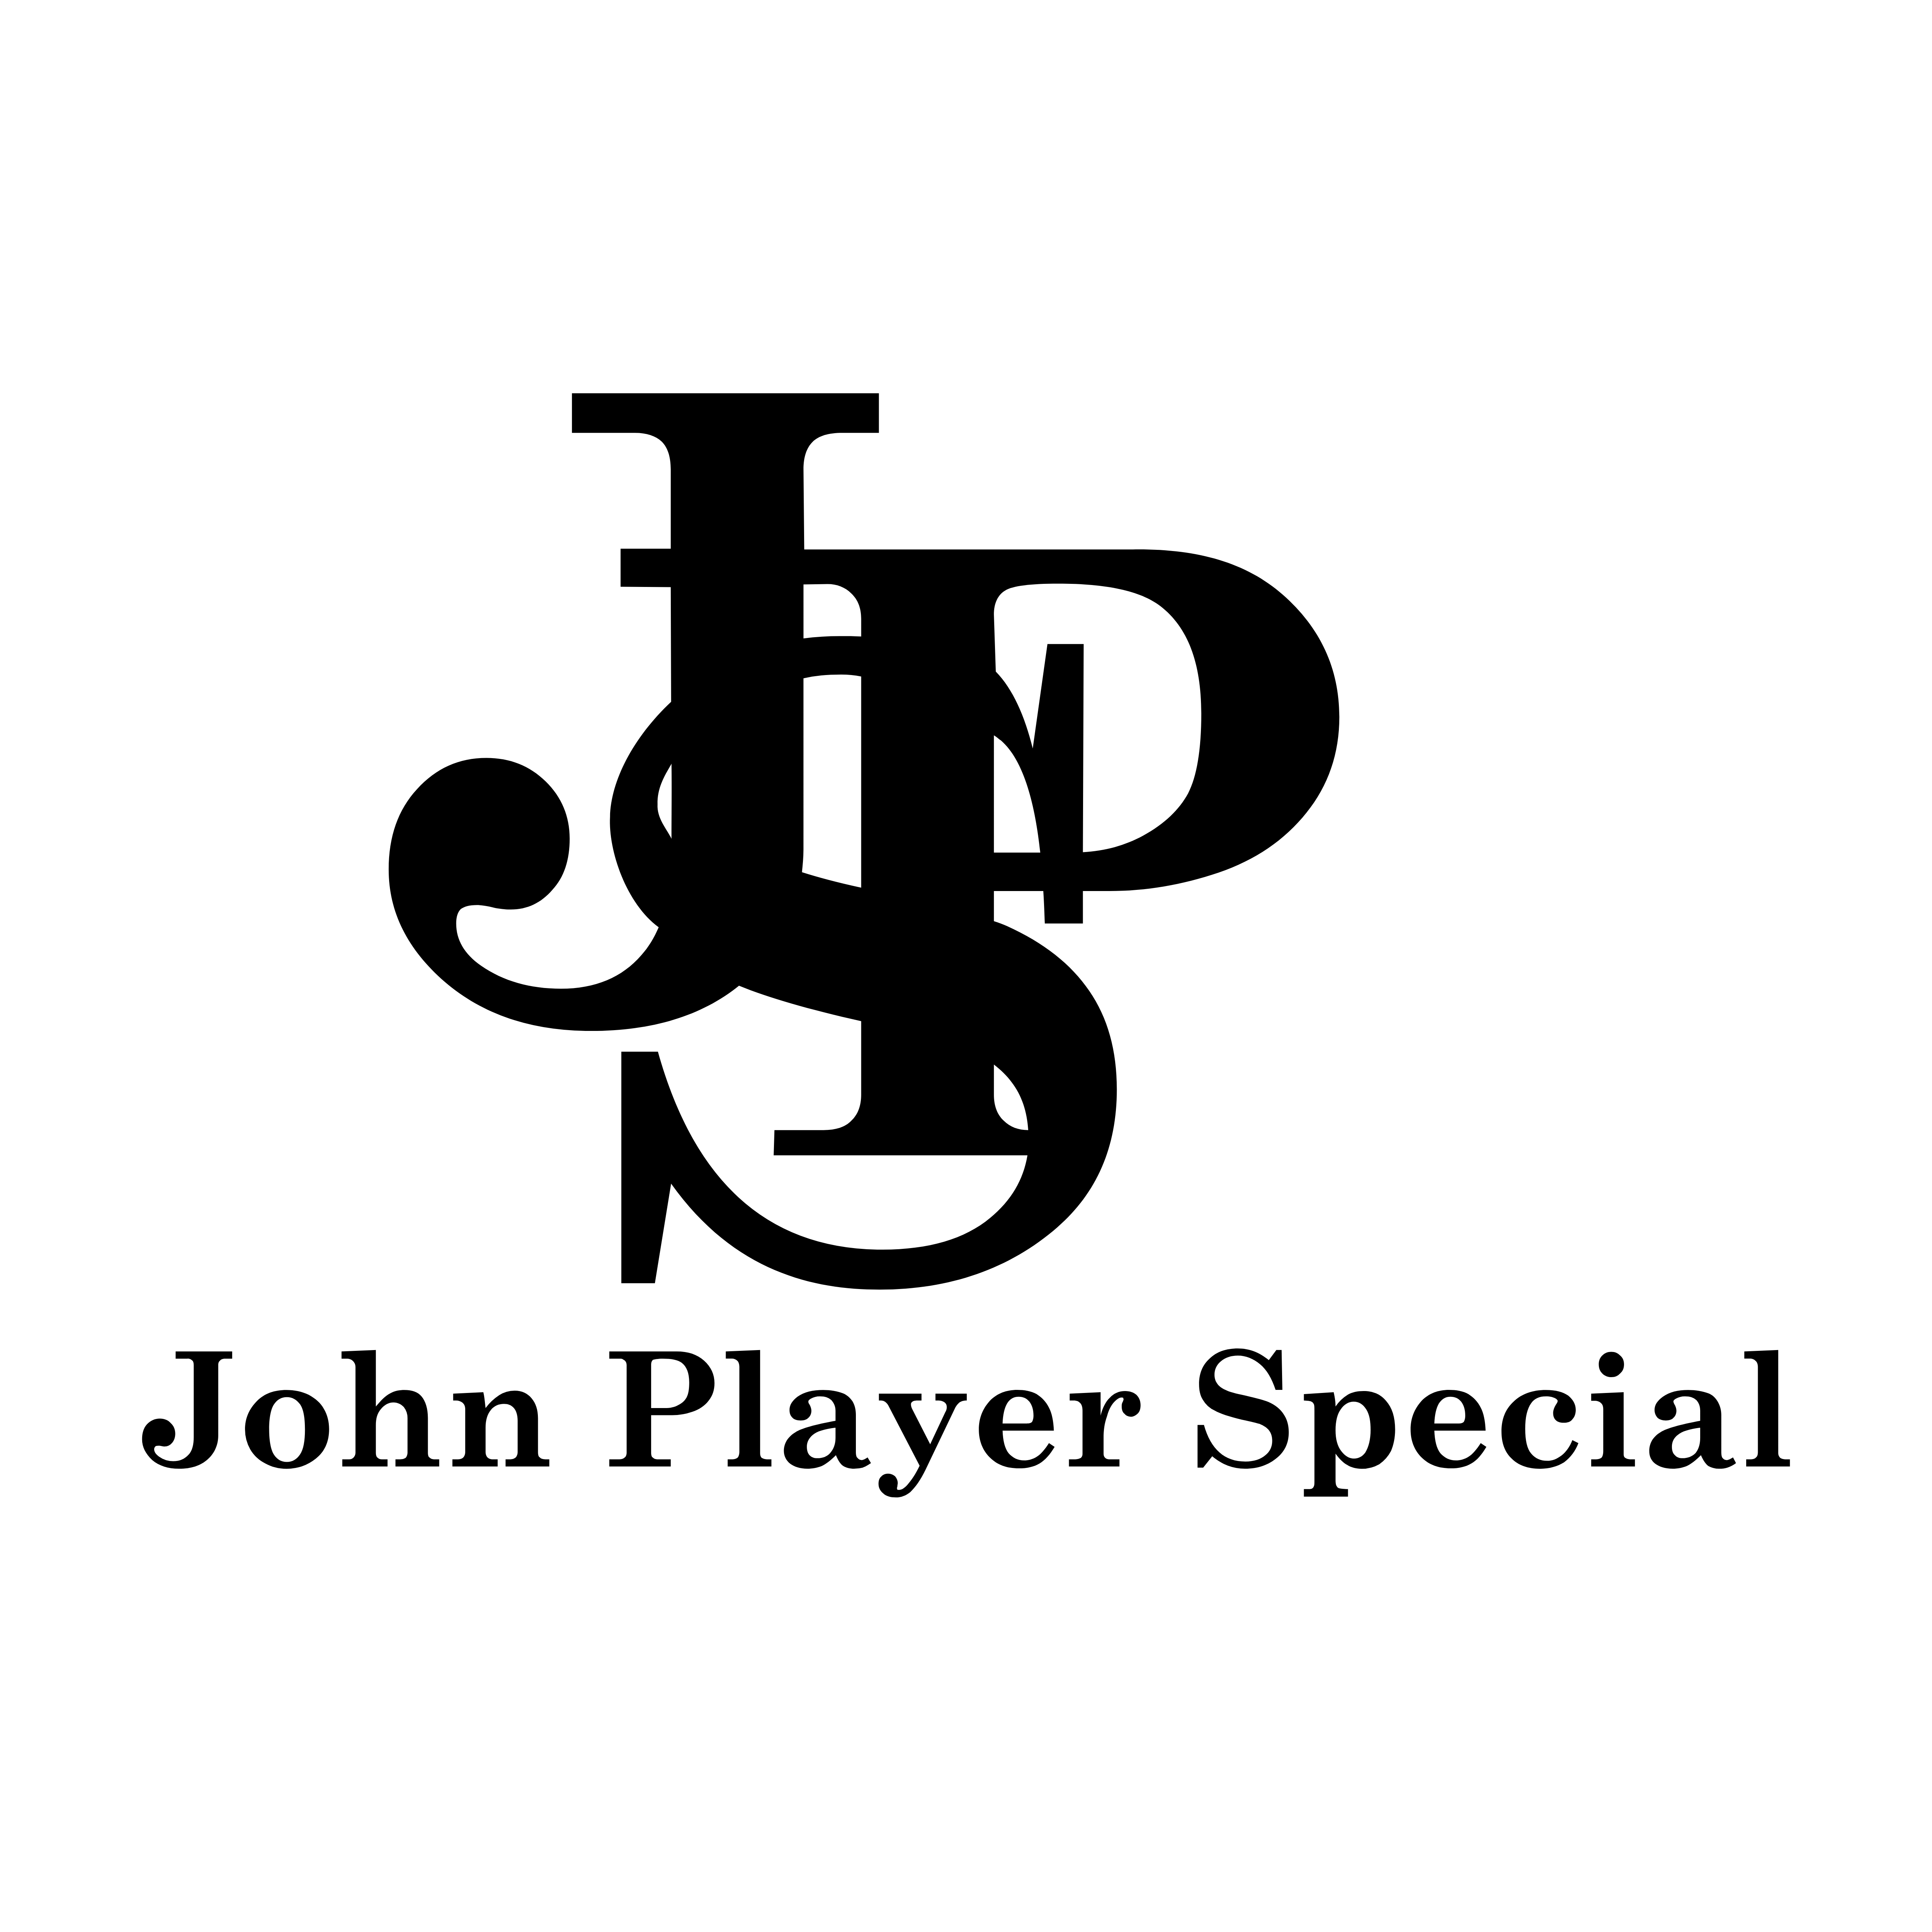 John Player Special – Logos Download John Player Logo